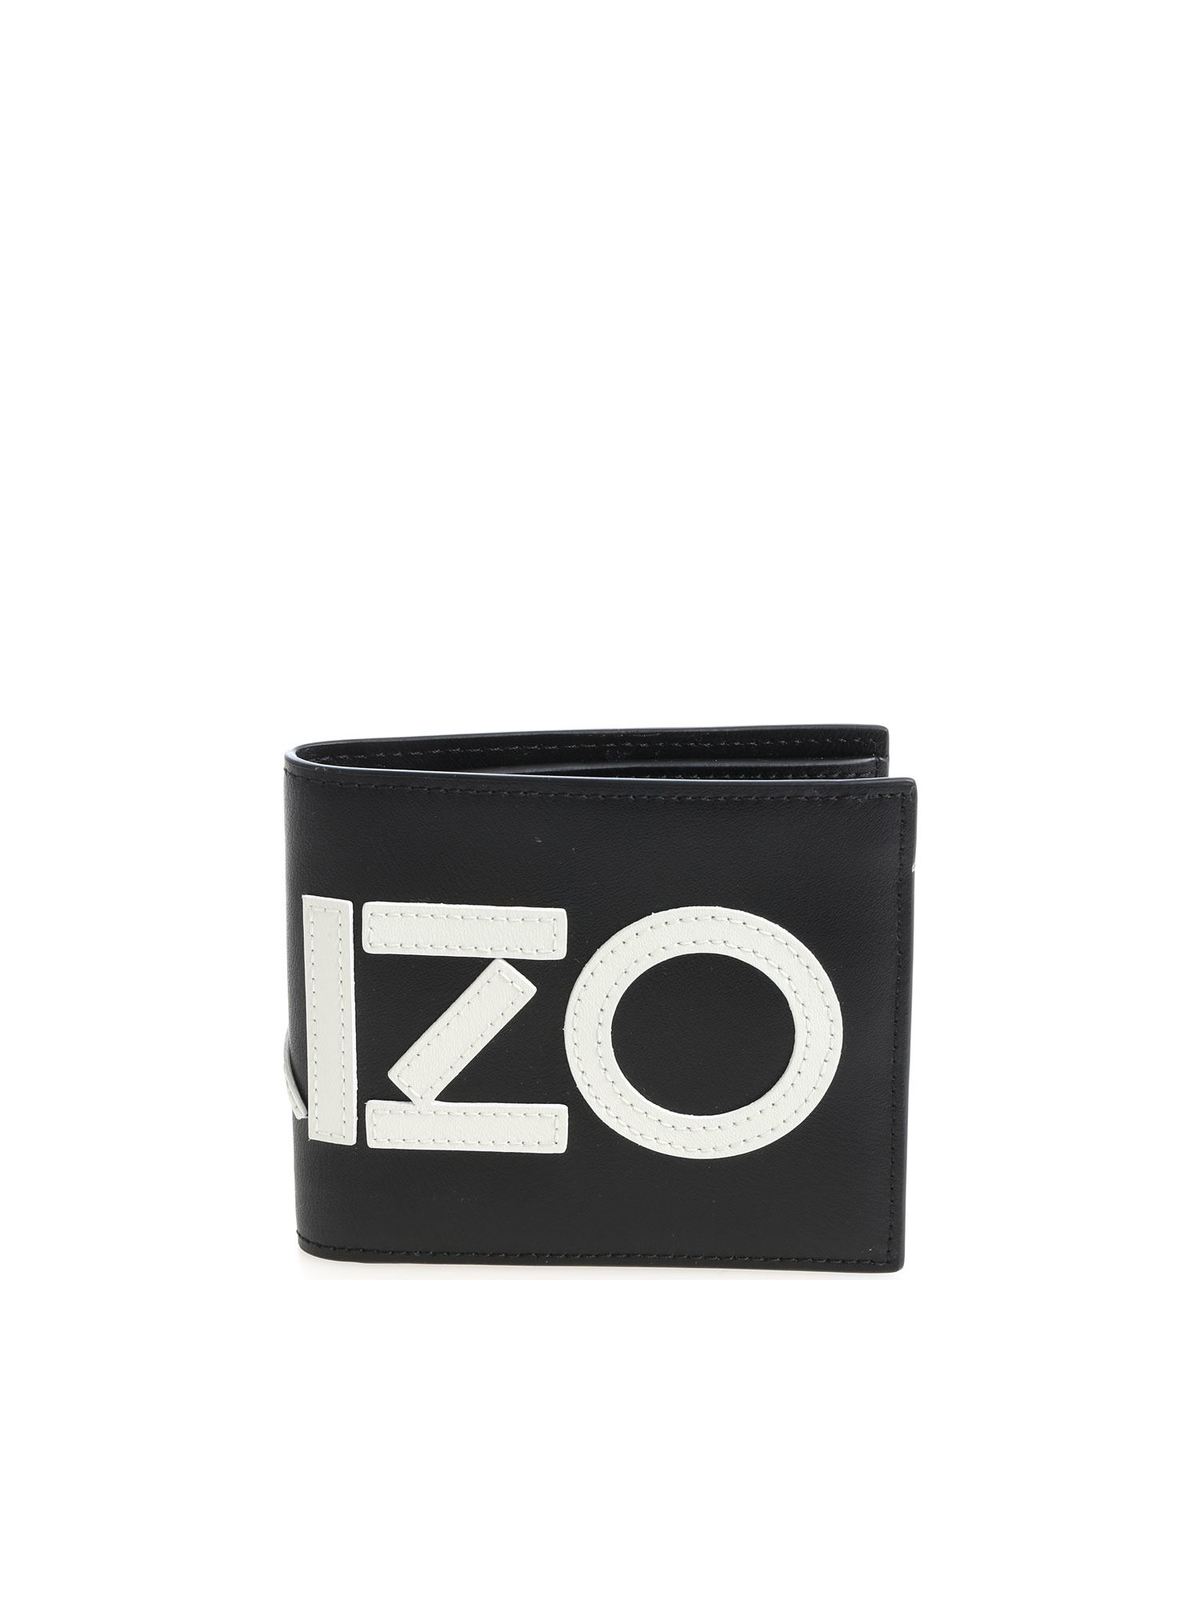 Kenzo - Black wallet with white logo 